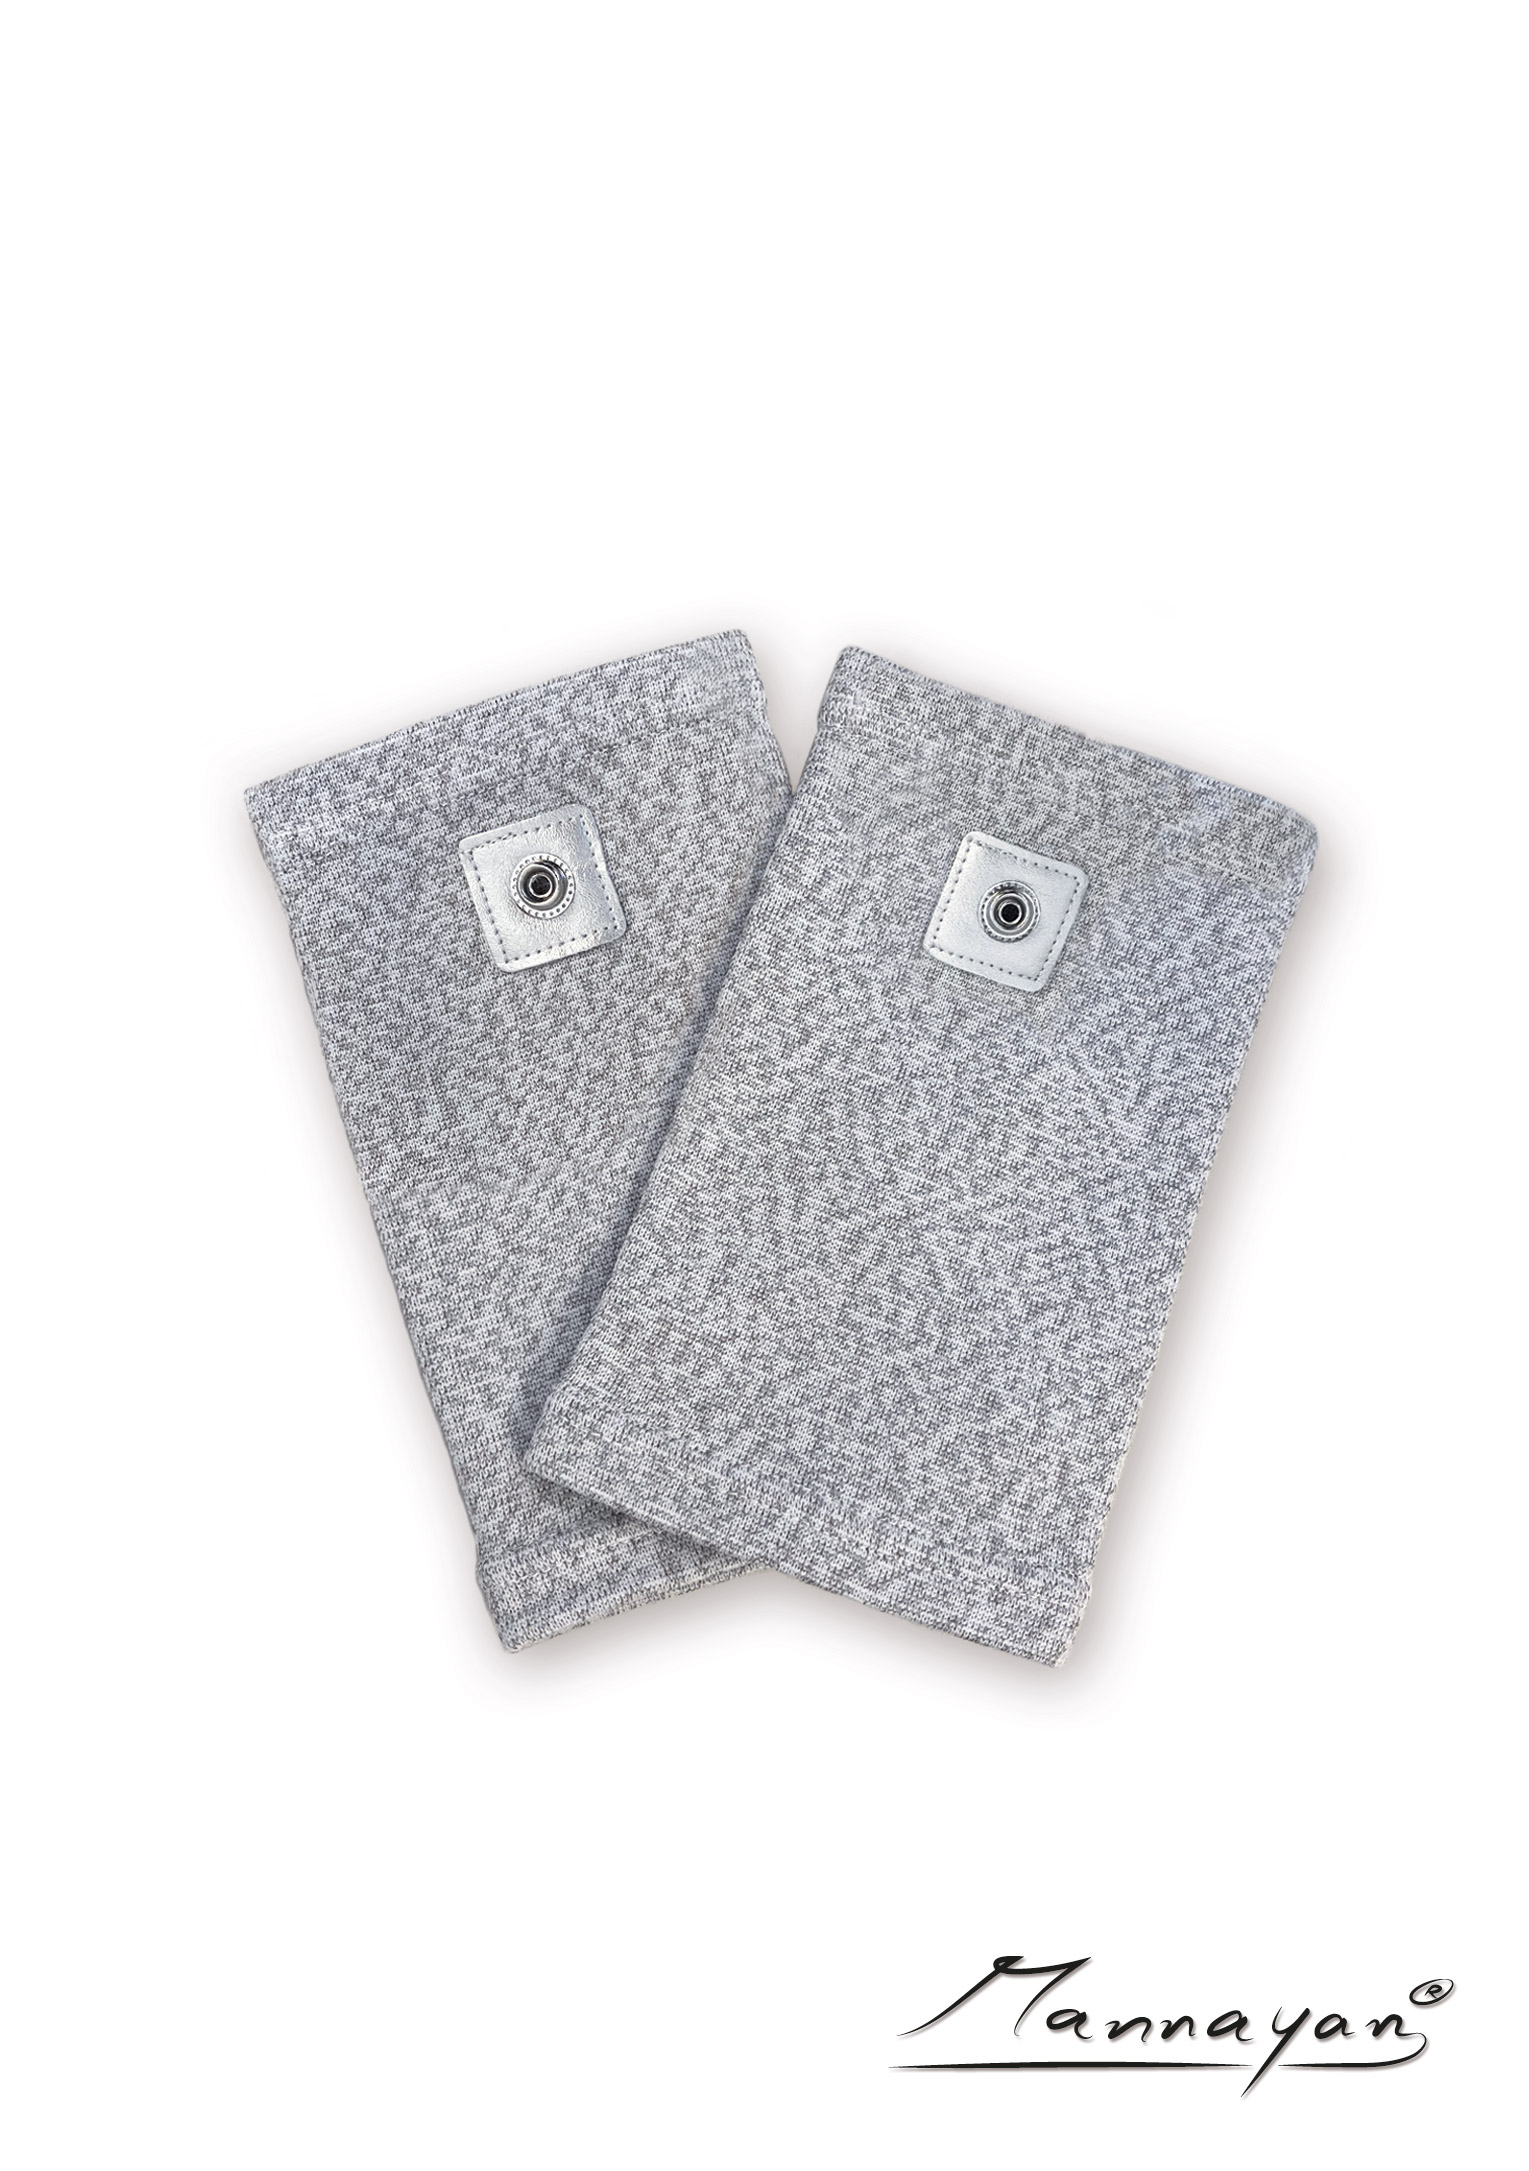 Silberfaser-Ellenbogen-Manschetten für Diamond Shield Zapper (1 Paar)